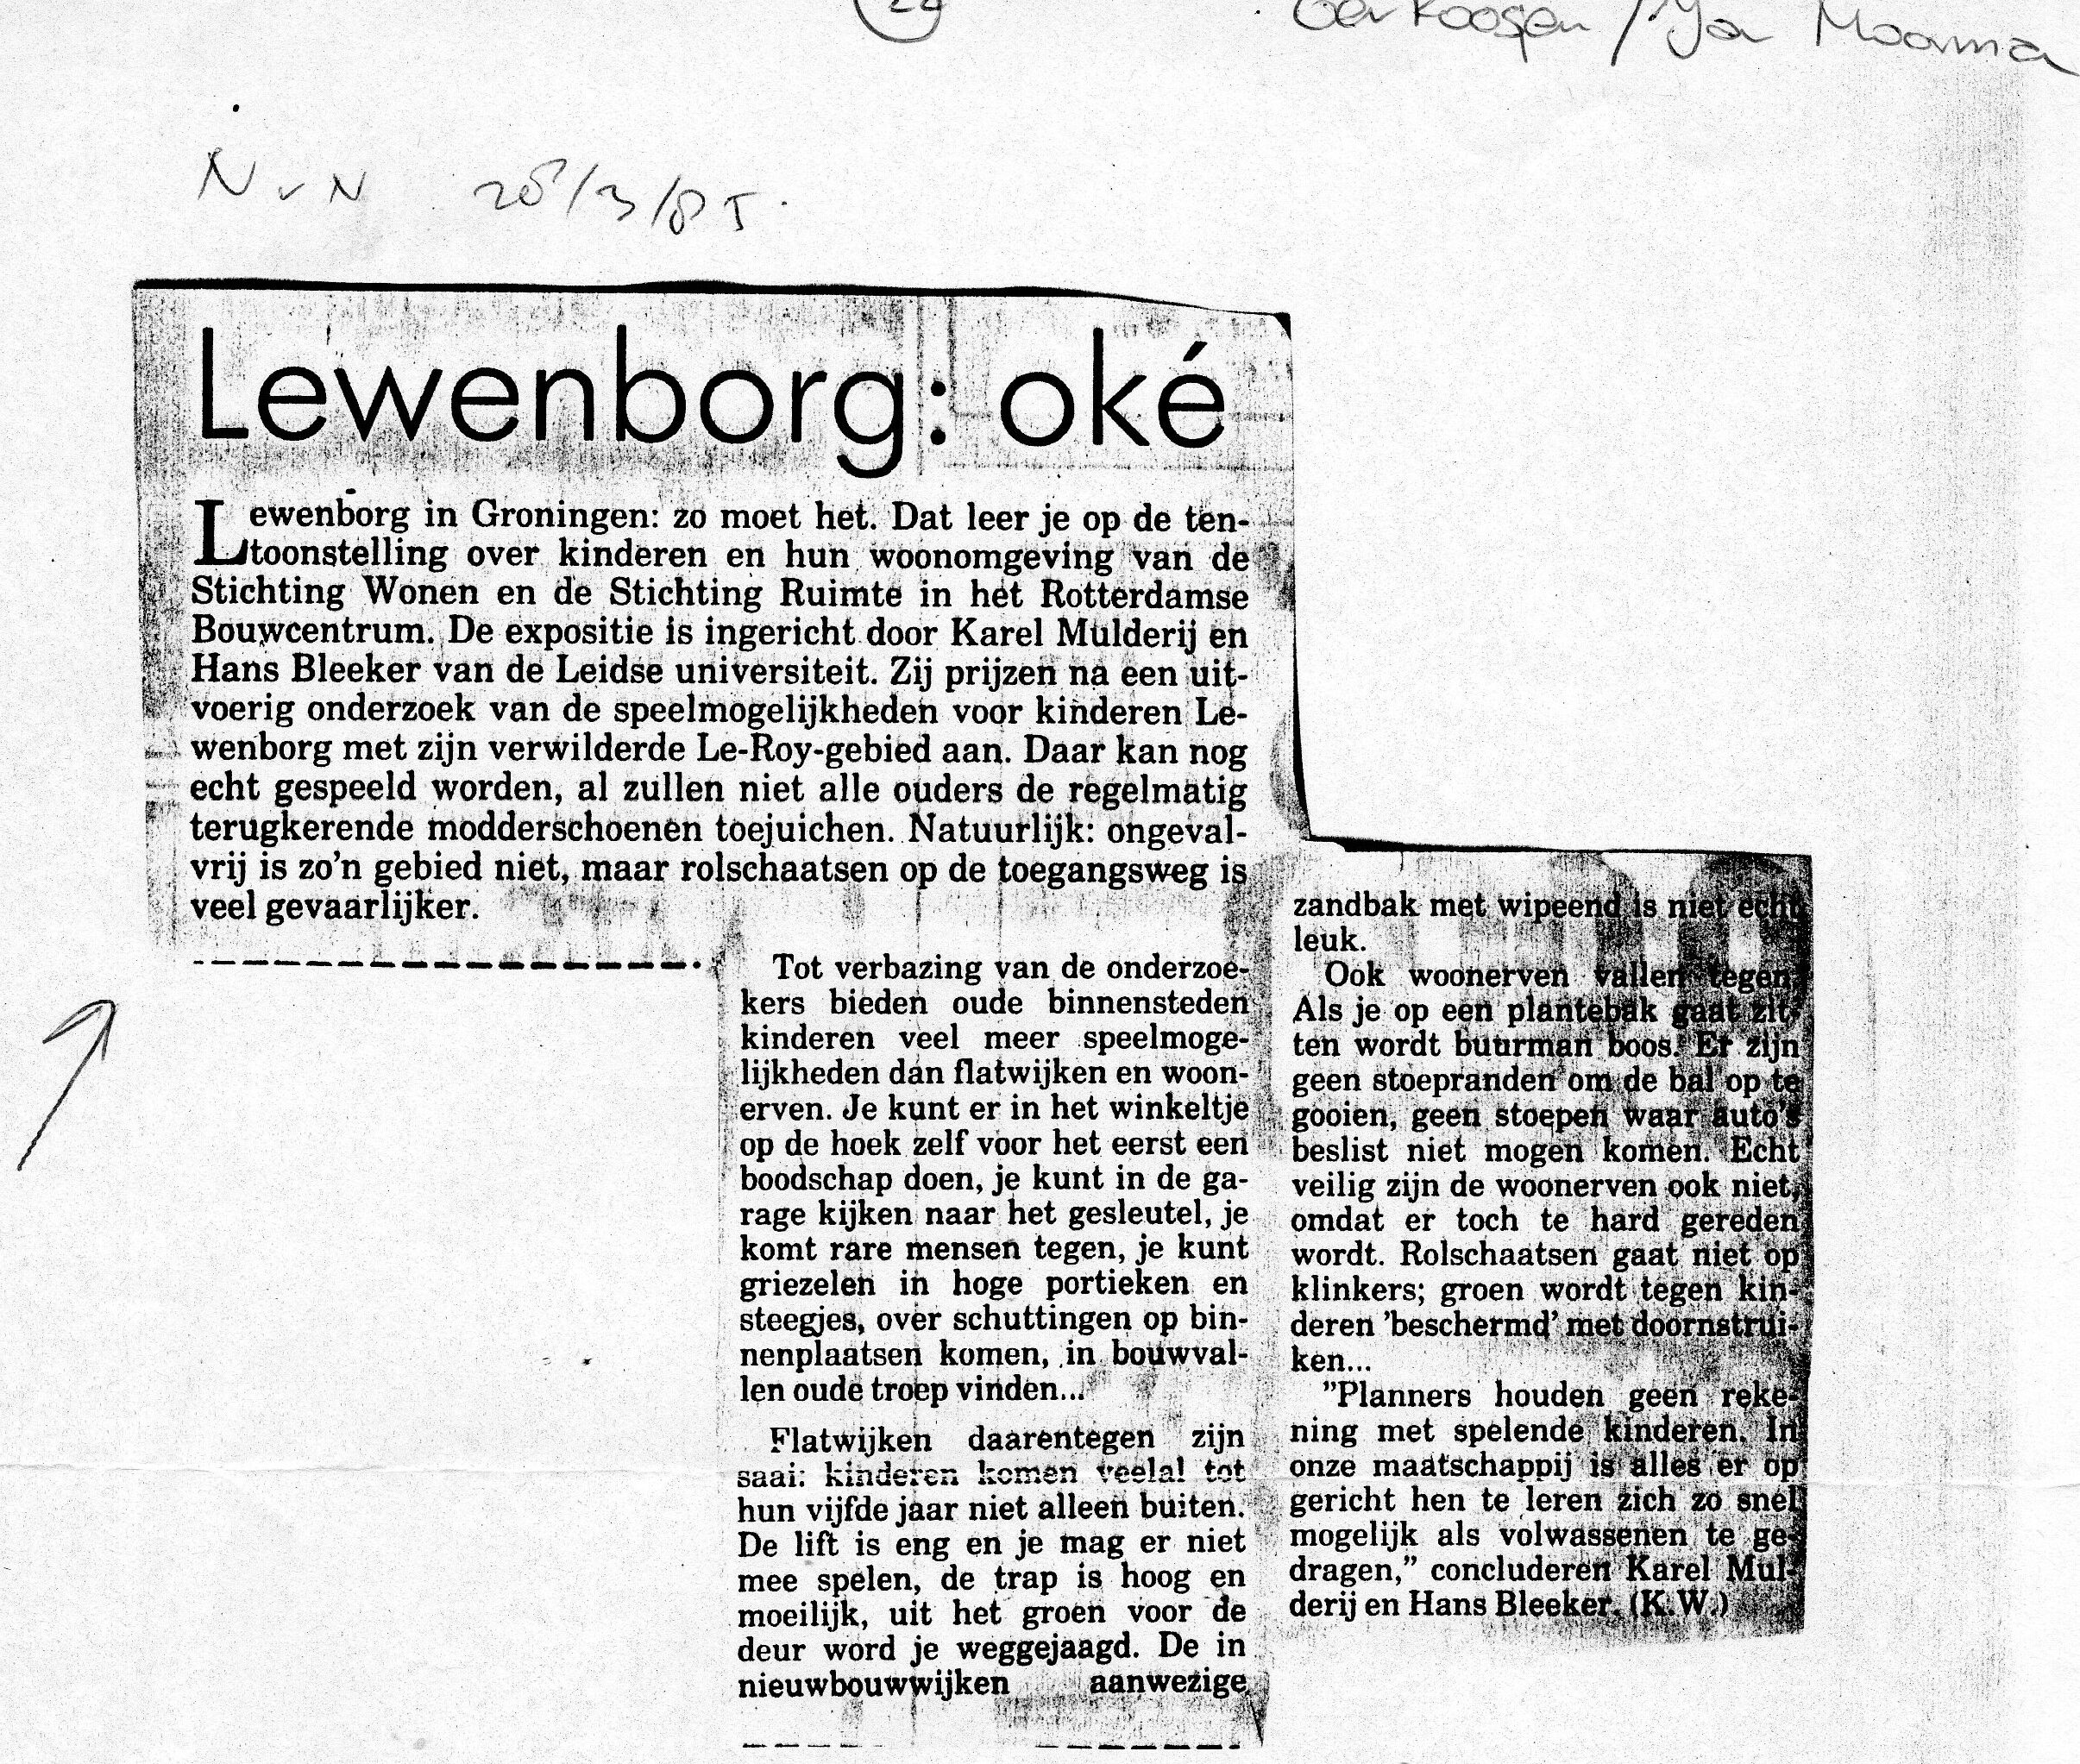 19850328_Lewenborg_oke_001.jpg